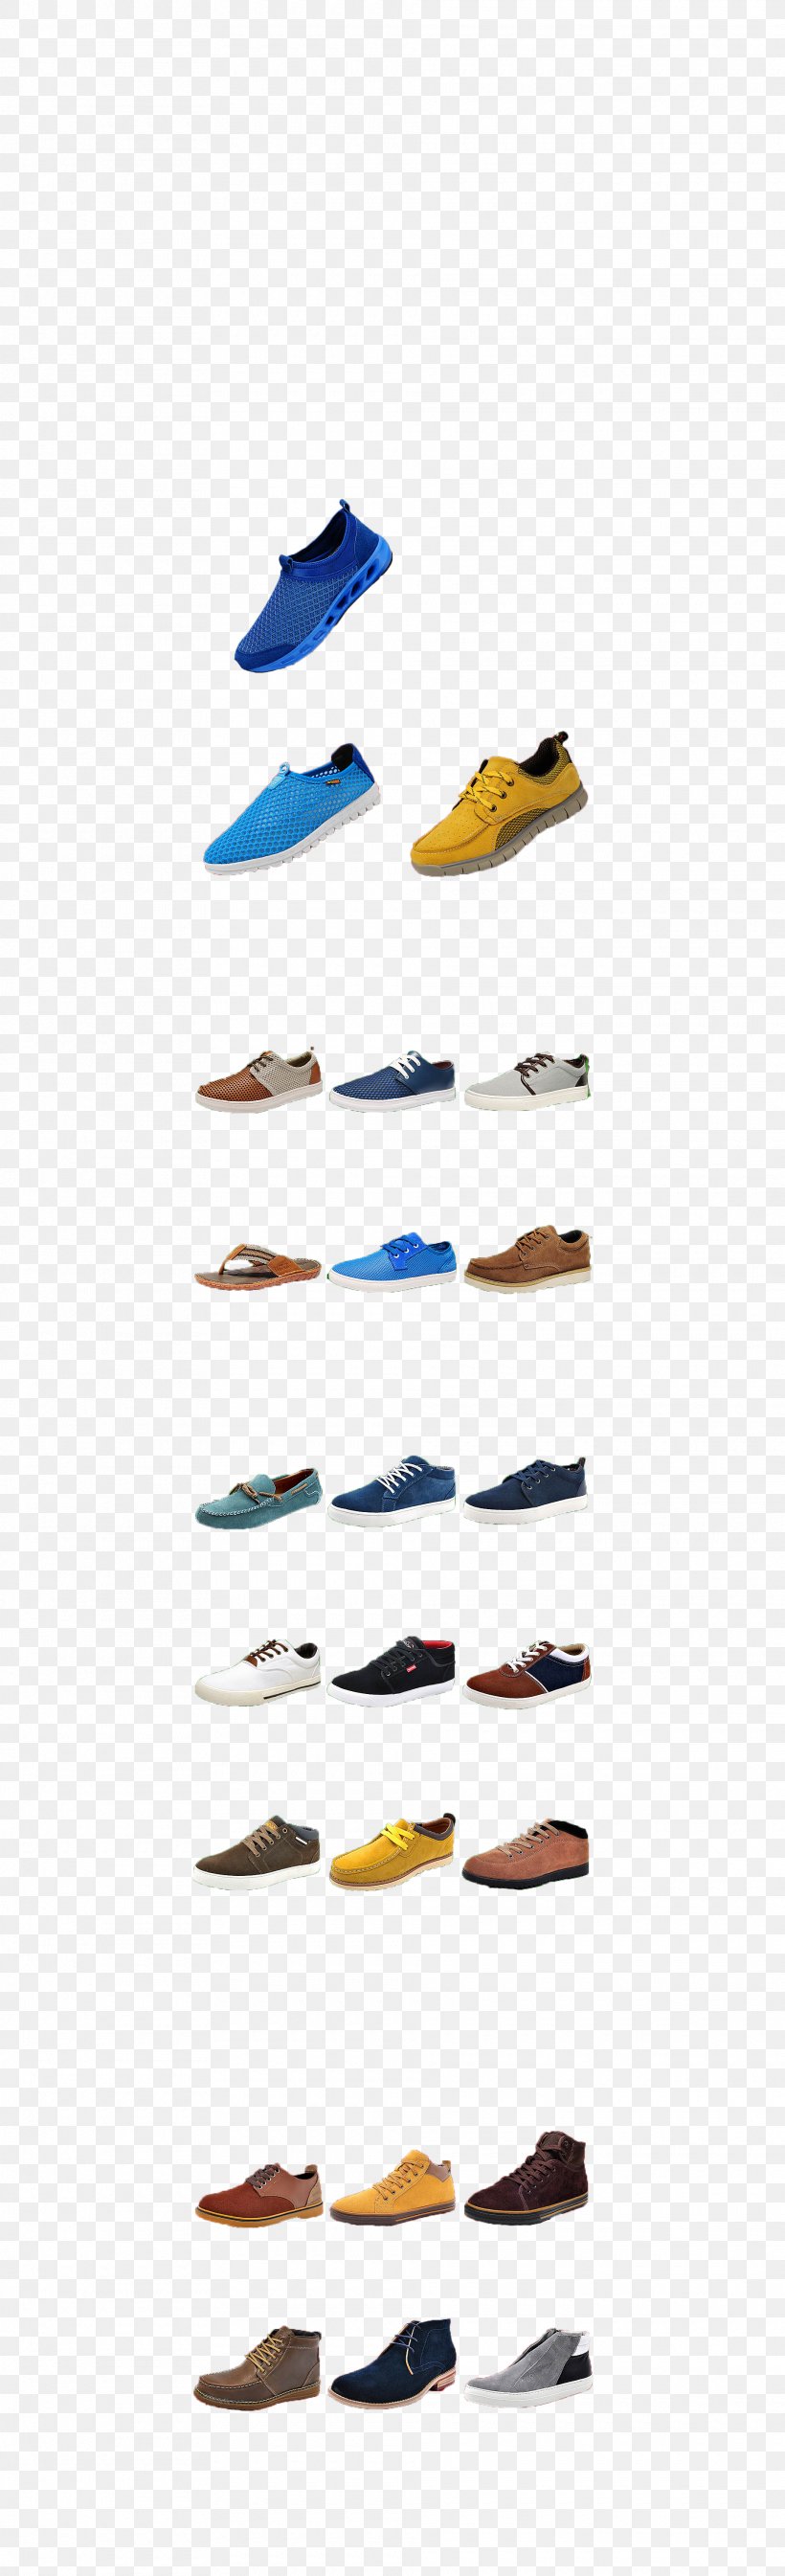 Sneakers Shoe Footwear, PNG, 1920x6300px, Sneakers, Absatz, Footwear, Highheeled Footwear, Shoe Download Free